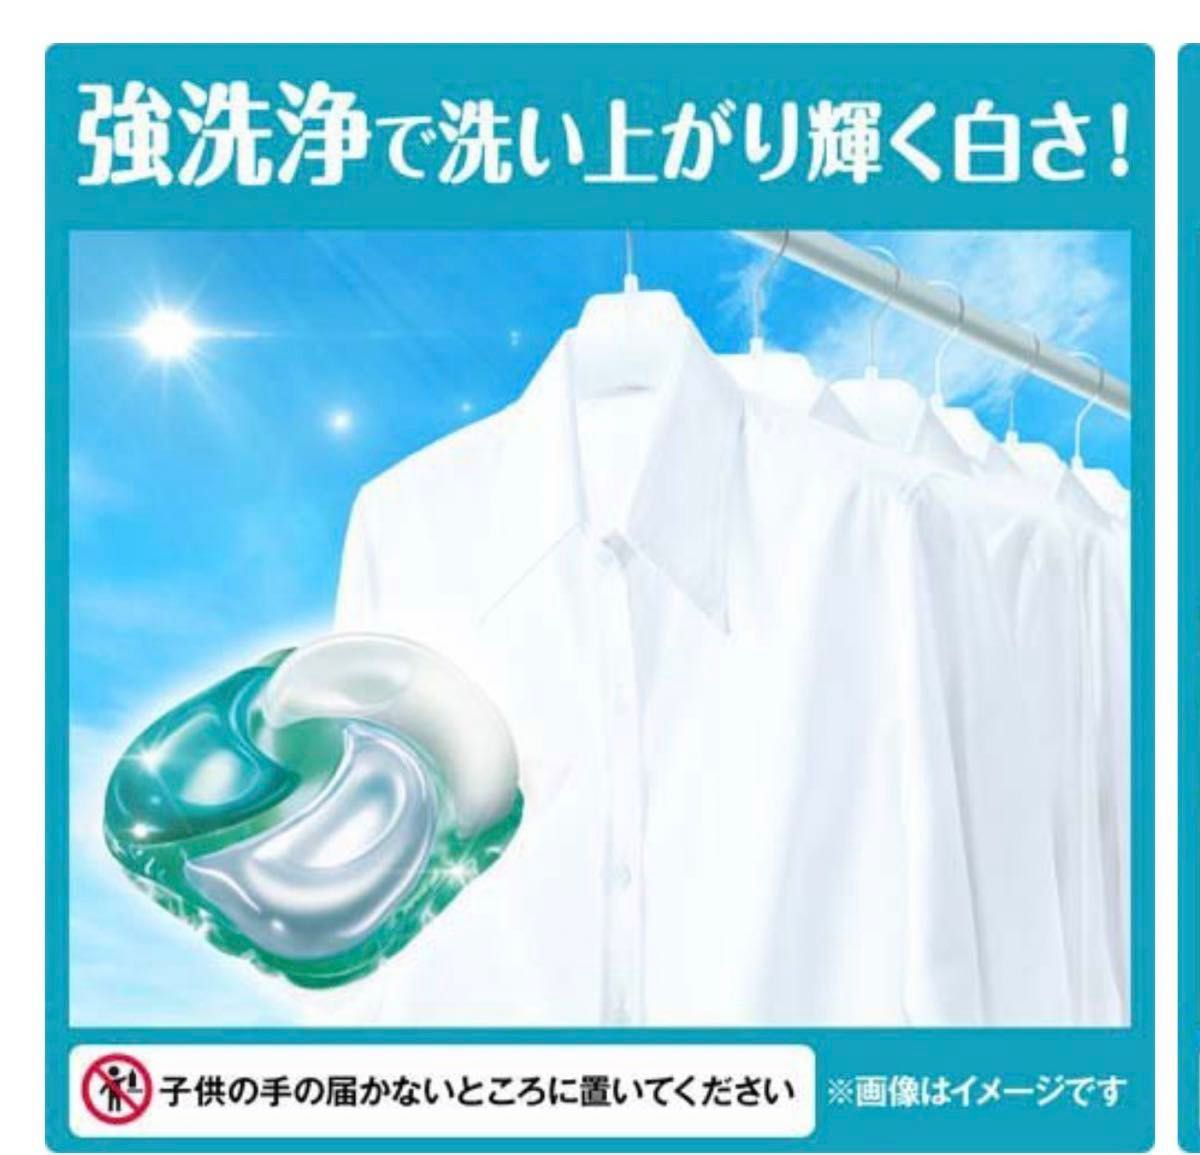 ボールド 洗濯洗剤 ジェルボール4D フレッシュフラワーサボン 詰替 36個×7袋